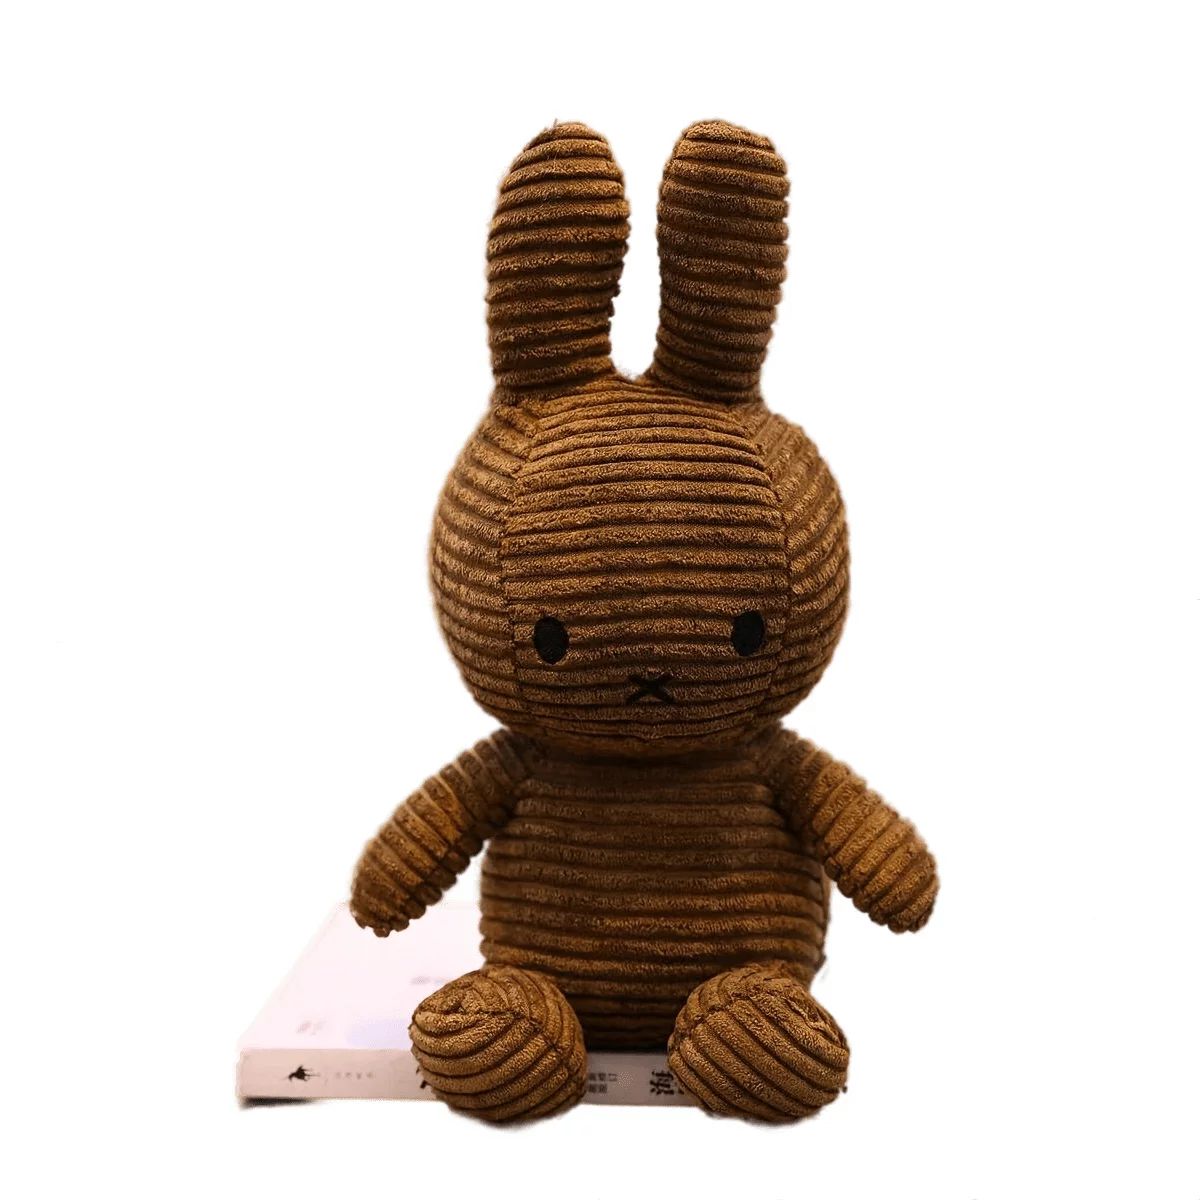 dallergut dream department store the joyfully magical korean bestseller 1 шт. кукла-кролик (9,84 дюйма × 5,12 дюйма) — пасхальный кролик, свадебные принадлежности, подарки для праздничной вечеринки Department Store, белый